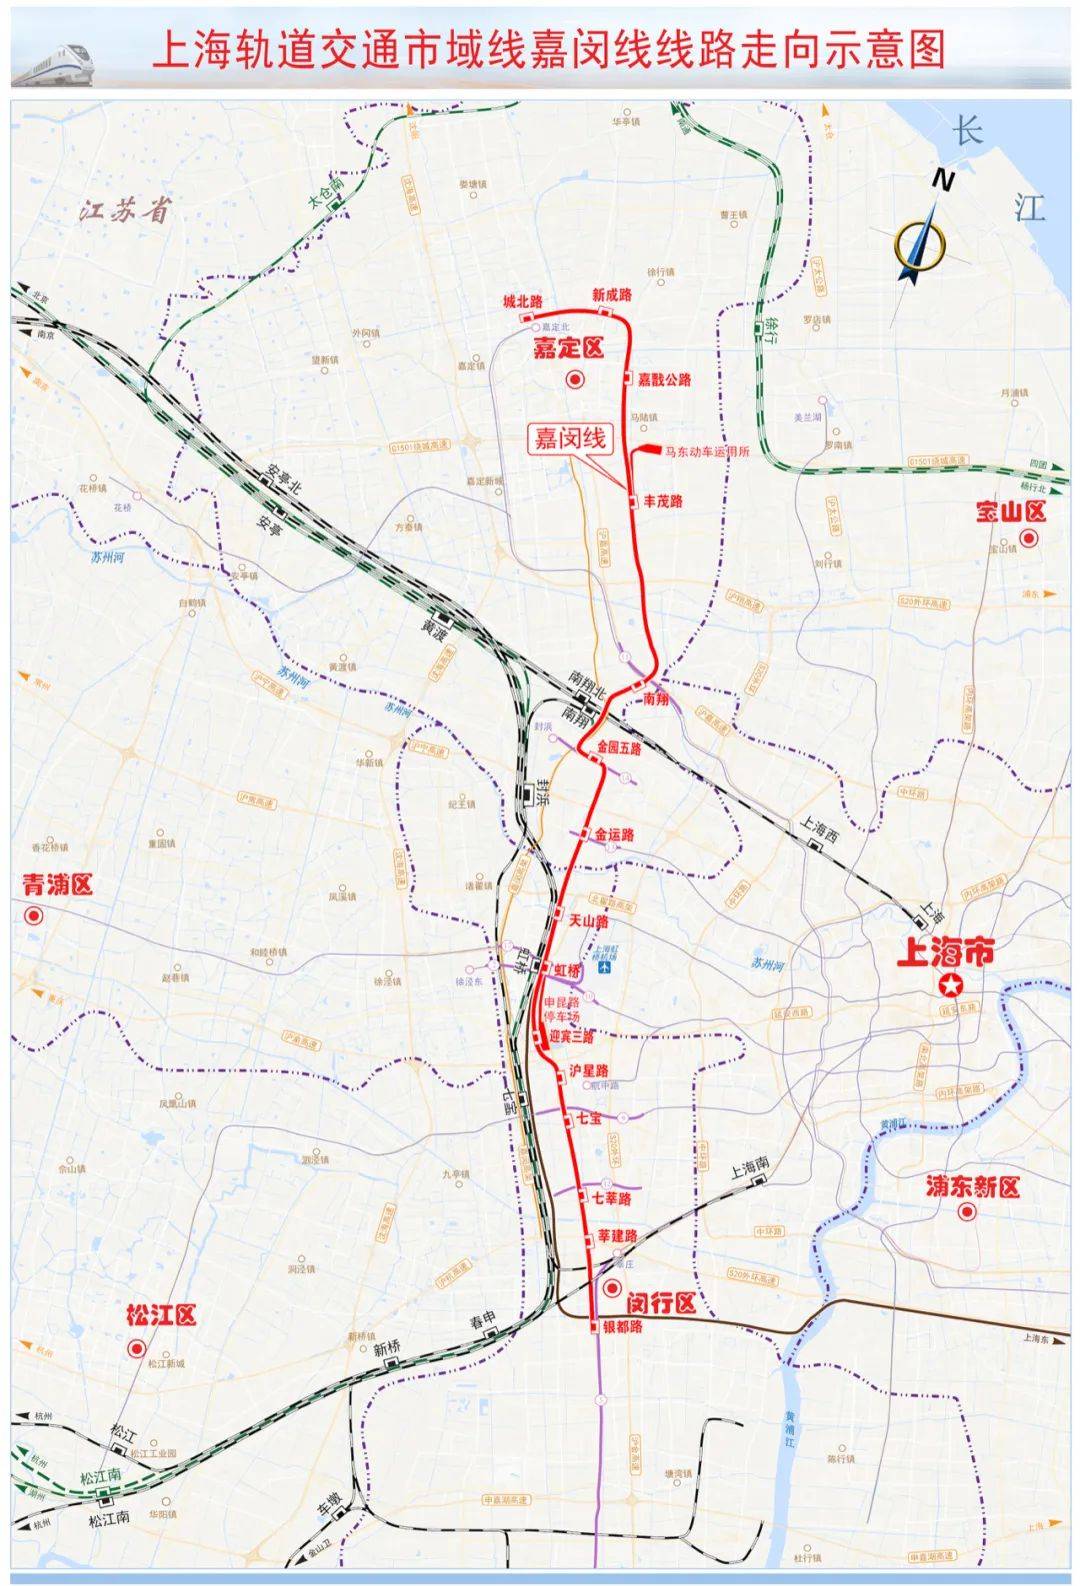 上海地铁市域线嘉闵线工程可行性研究报告获批，全长44公里